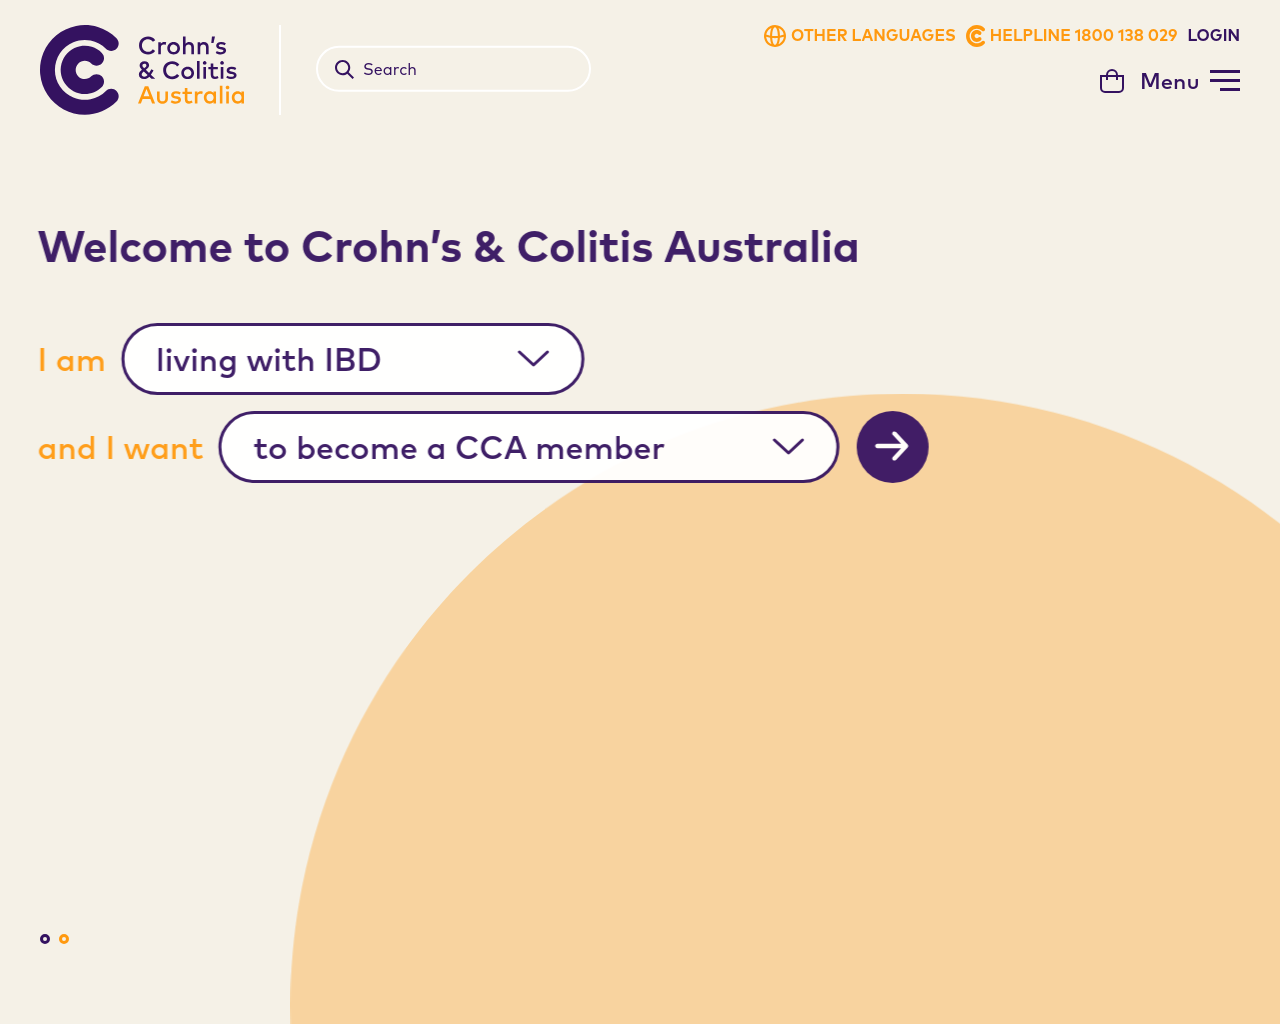 crohnsandcolitis.com.au